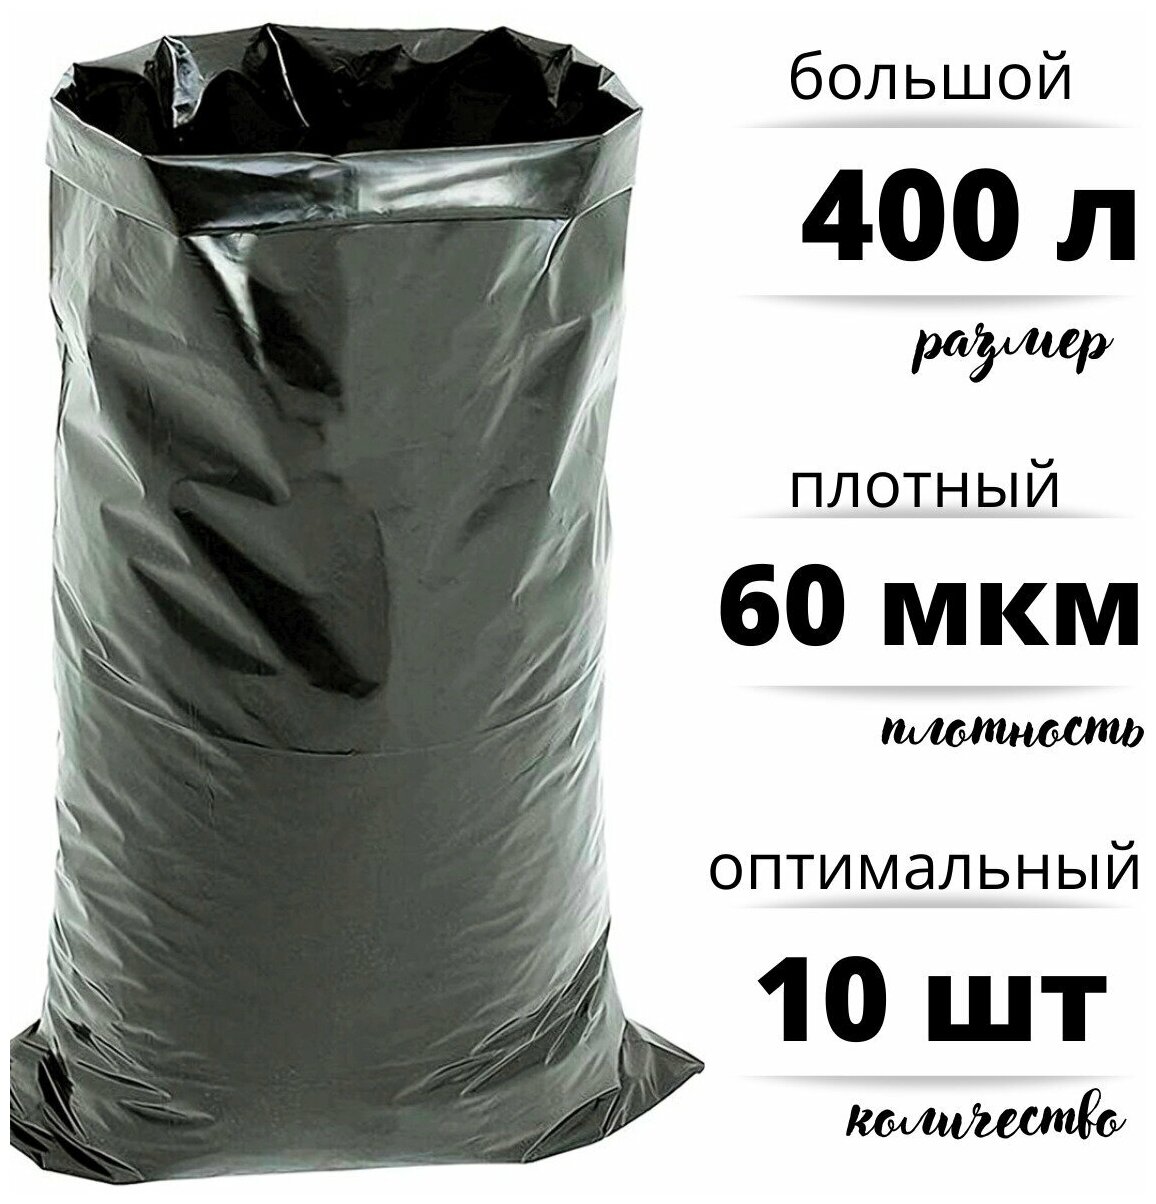 Мешки для строительного и бытового мусора полиэтиленовые 400 л особо плотные ПВД 60 мкм 10 штук